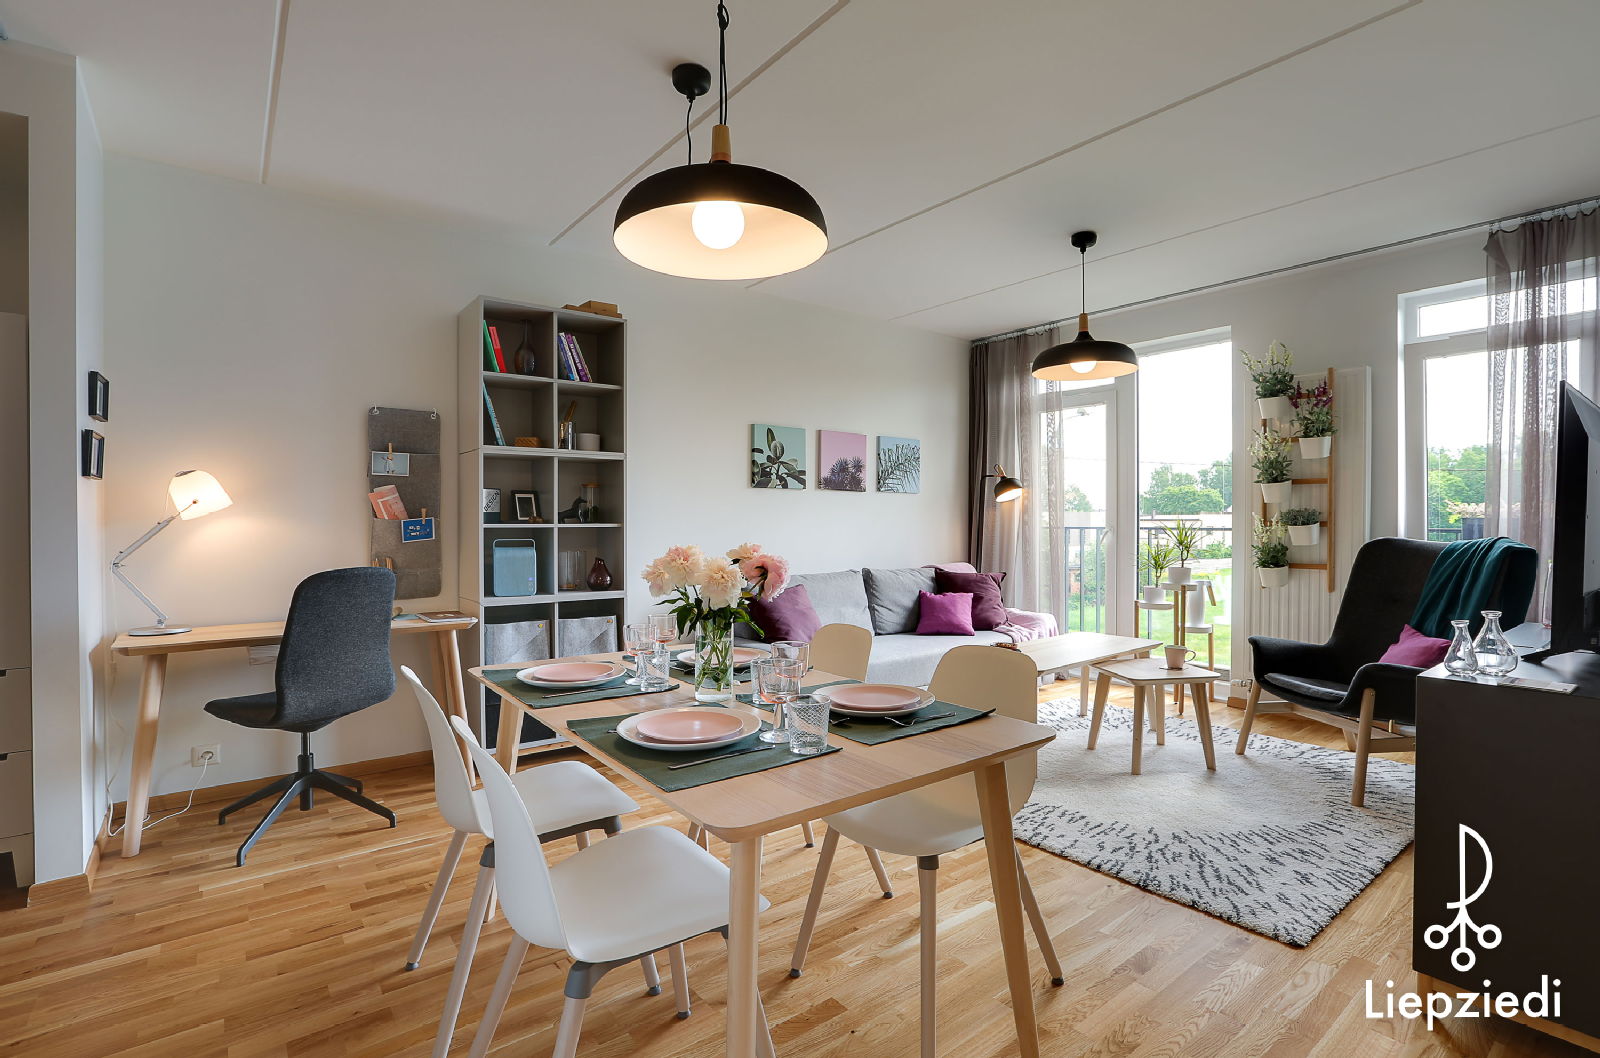 Ērts 3 istabu dzīvokļa iekārtojums par 15 000 eiro! - Nekustamo īpašumu ziņas - City24.lv nekustamo īpašumu sludinājumu portāls